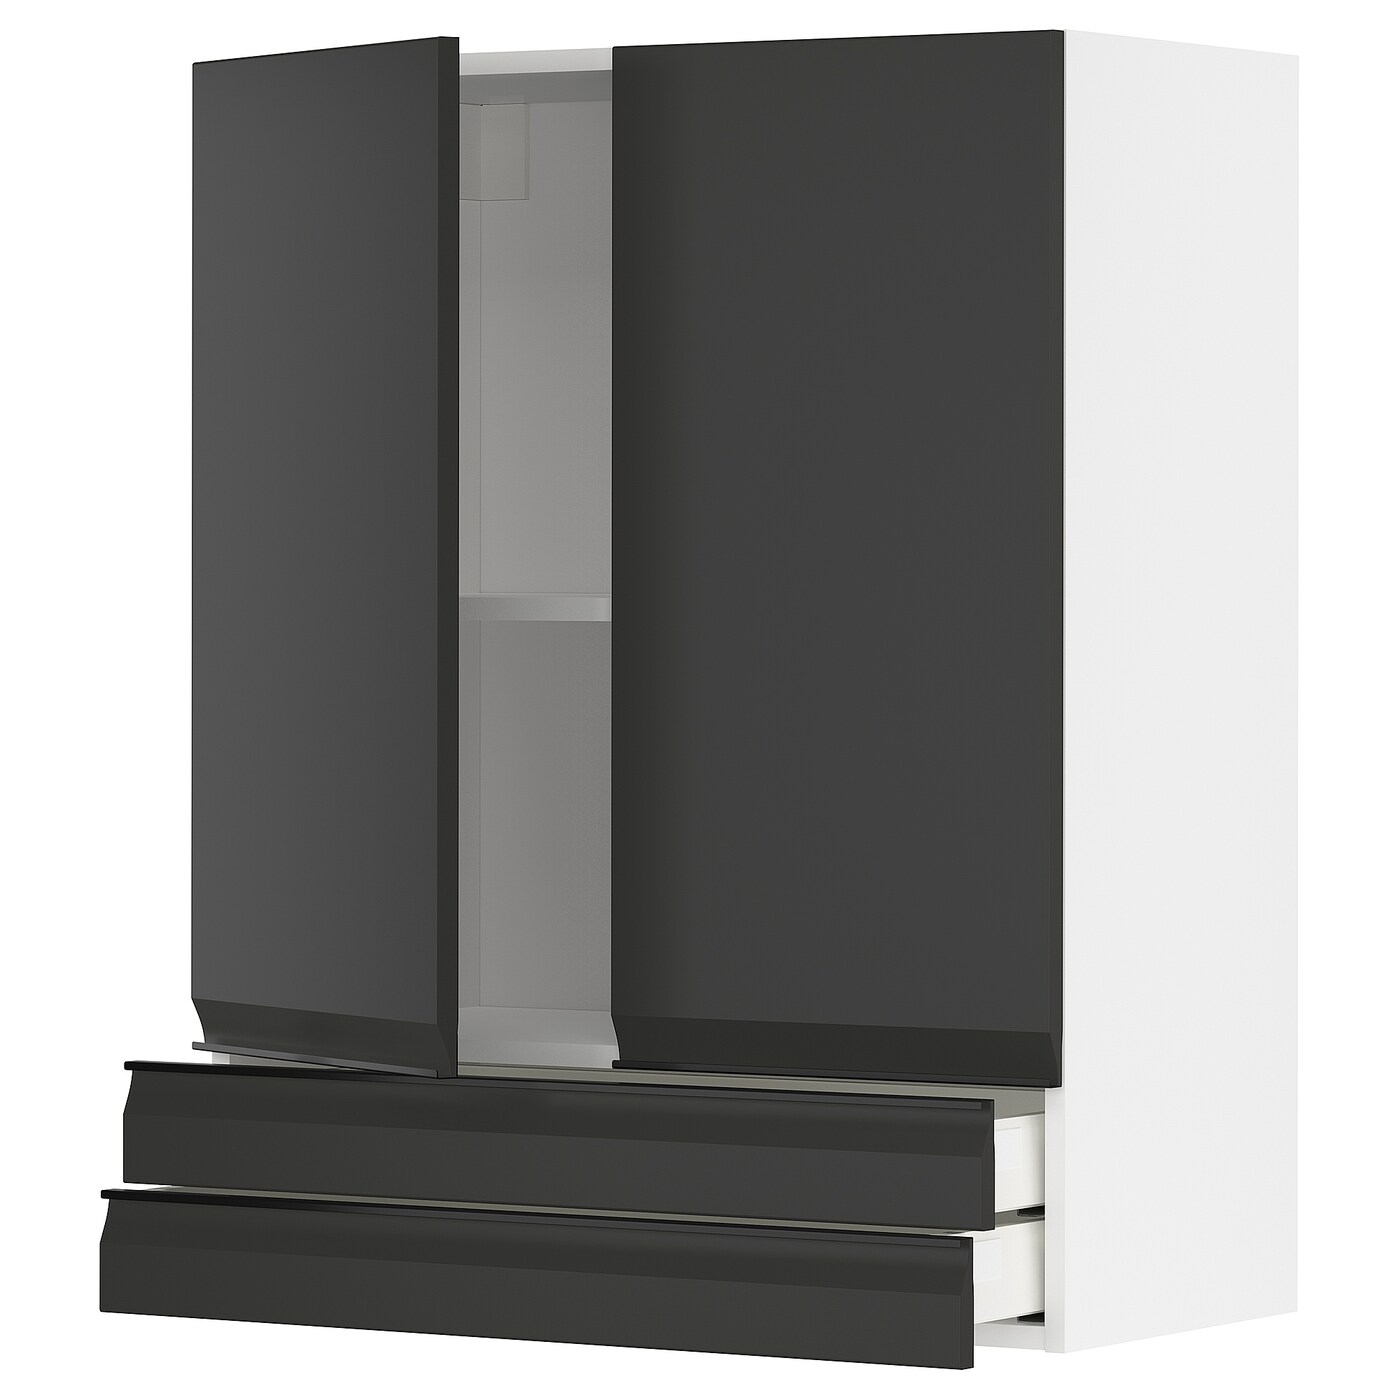 Напольный кухонный шкаф  - IKEA METOD MAXIMERA, 100x39x80см, белый/темно-серый, МЕТОД МАКСИМЕРА ИКЕА